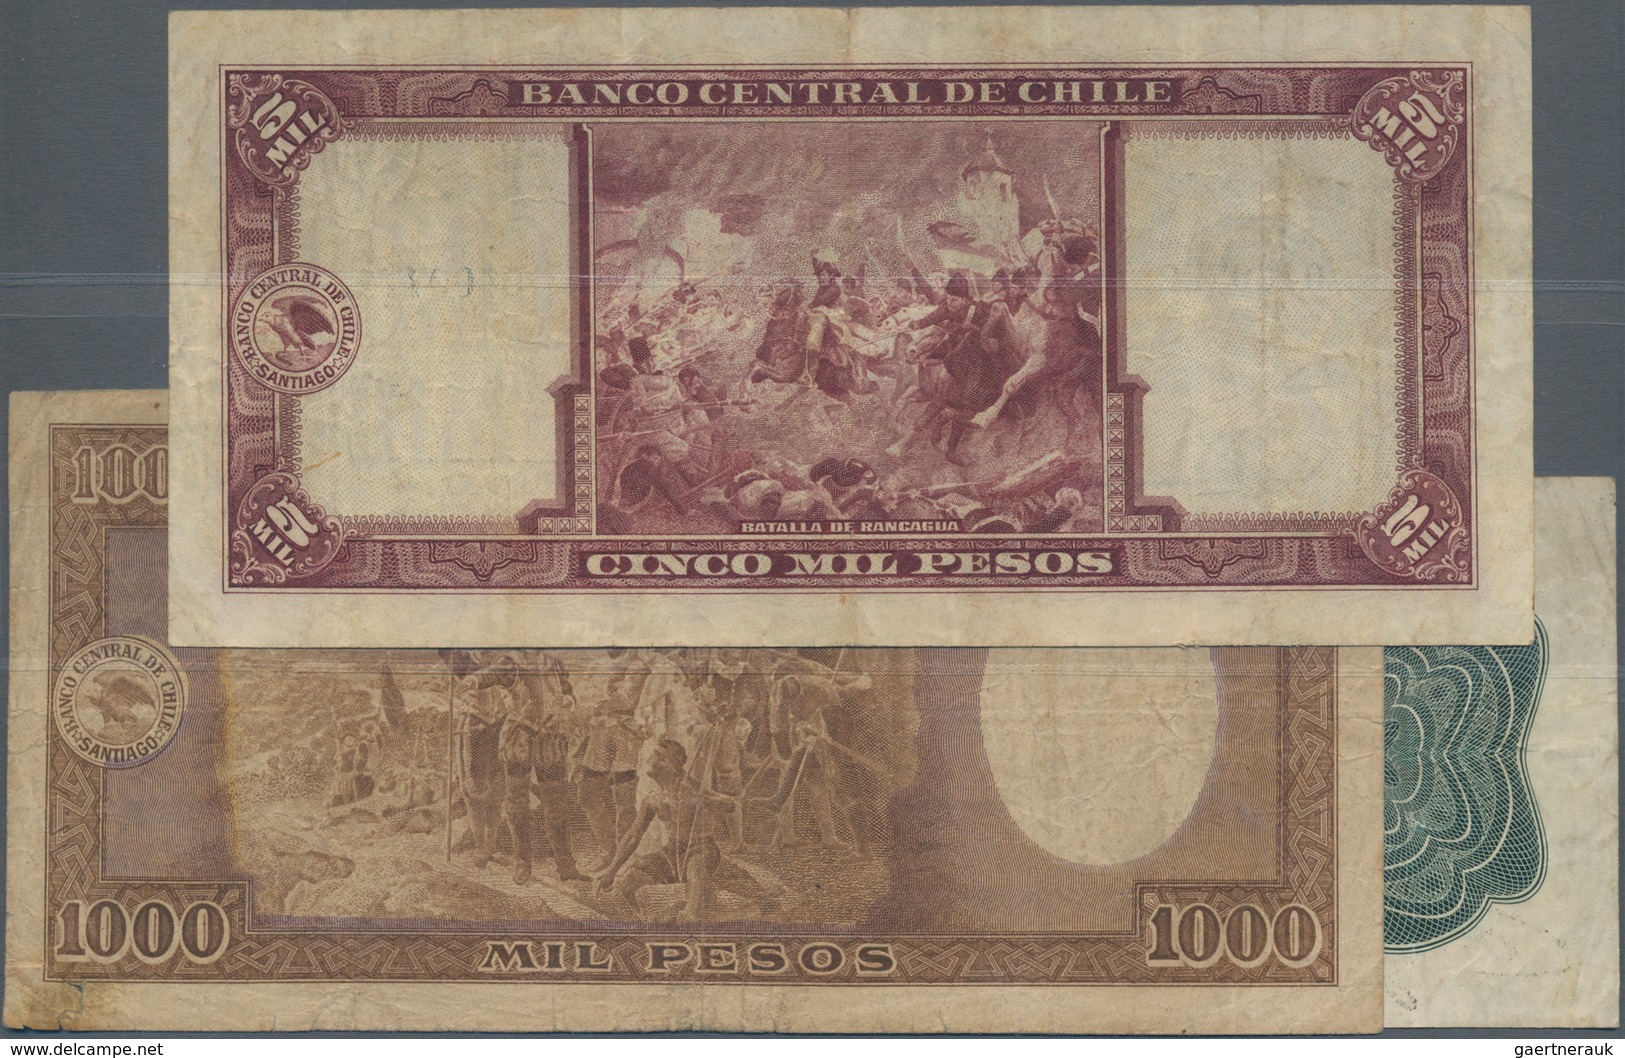 Chile: Nice Set With 3 Banknotes Republica De Chile 1 Peso 1919 P.15b (F), Banco Central De Chile 10 - Chile